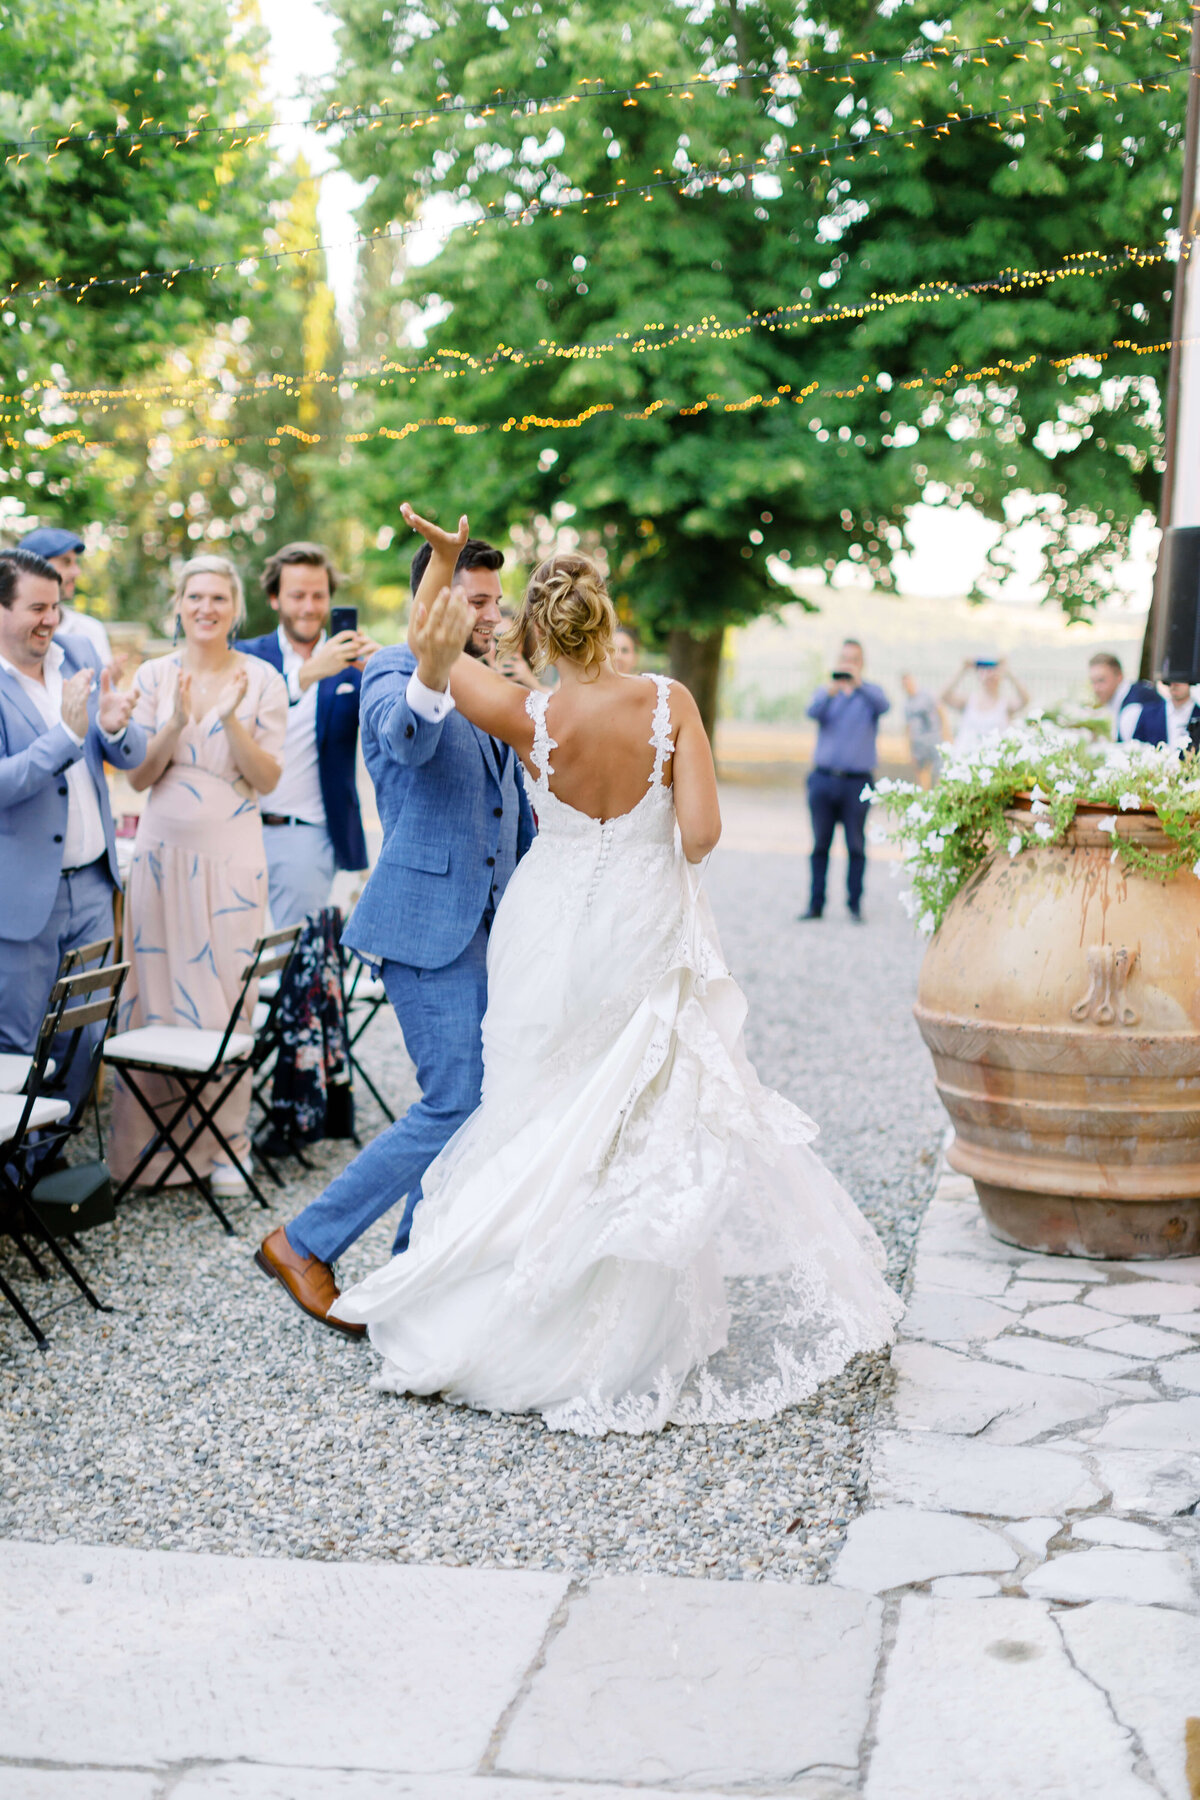 Wedding E&T - Tuscany - Italy 2019 40